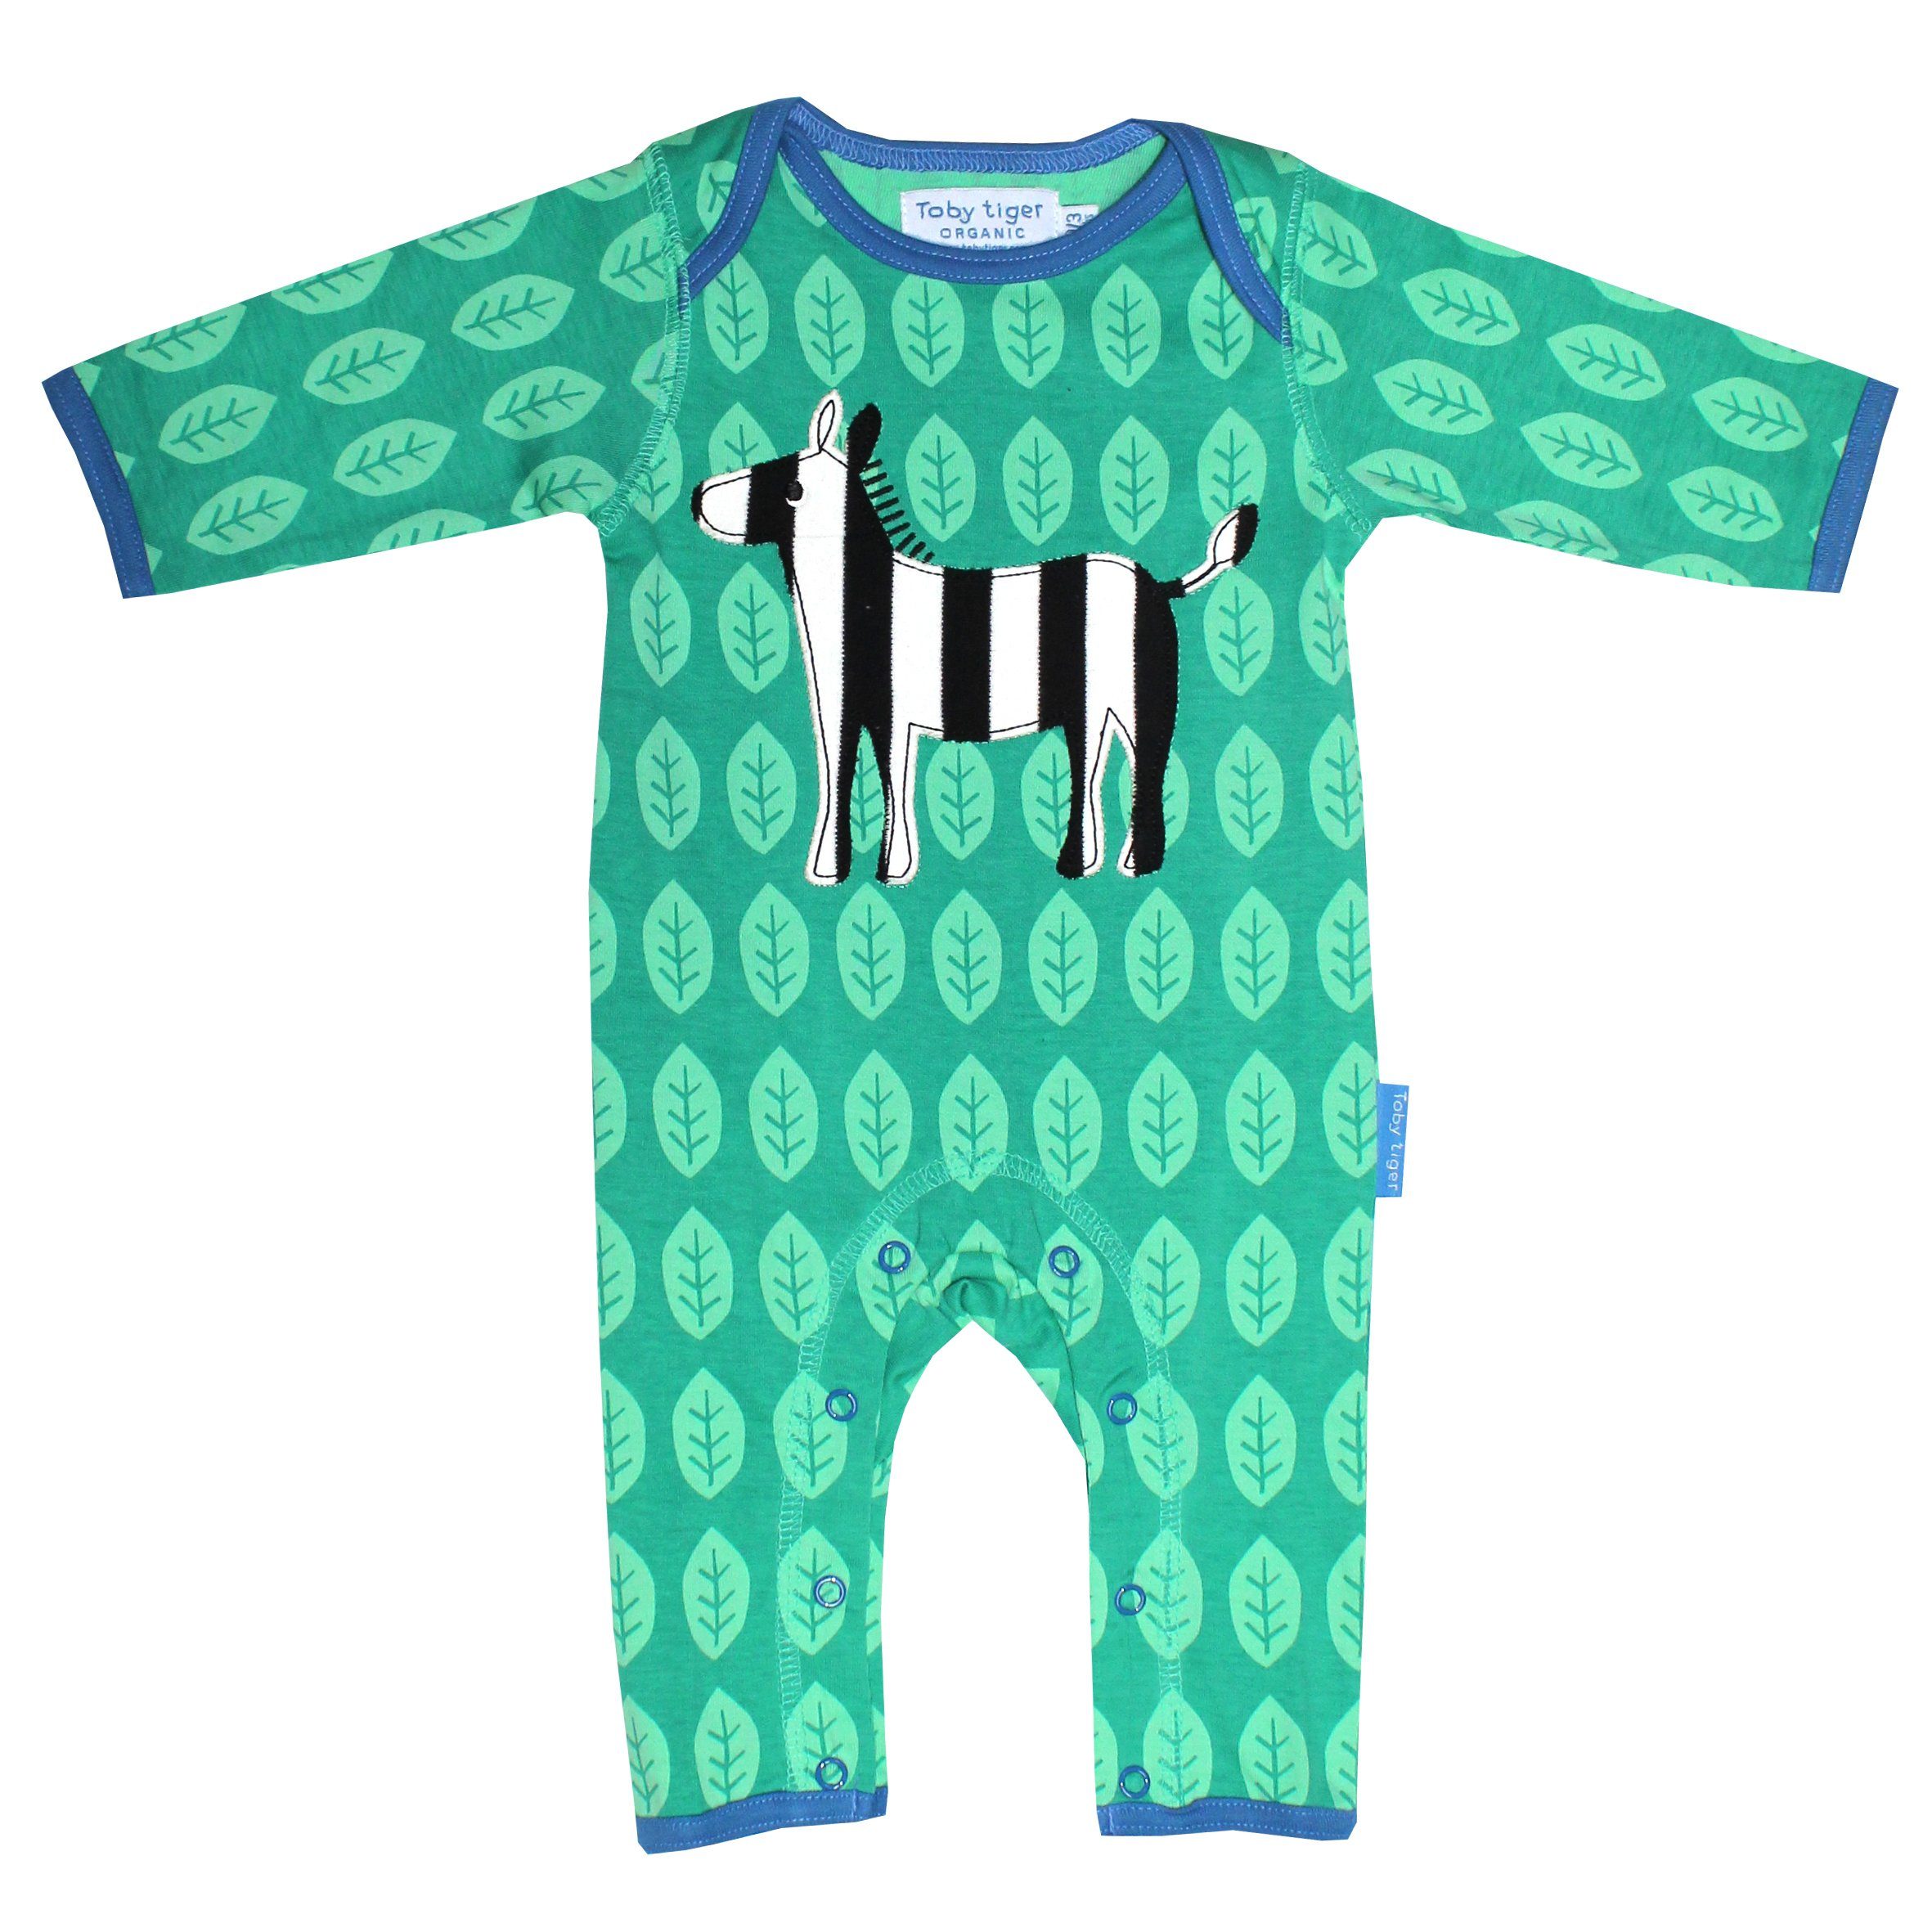 Toby Tiger Schlafanzug Schlafanzug mit Zebra Applikation